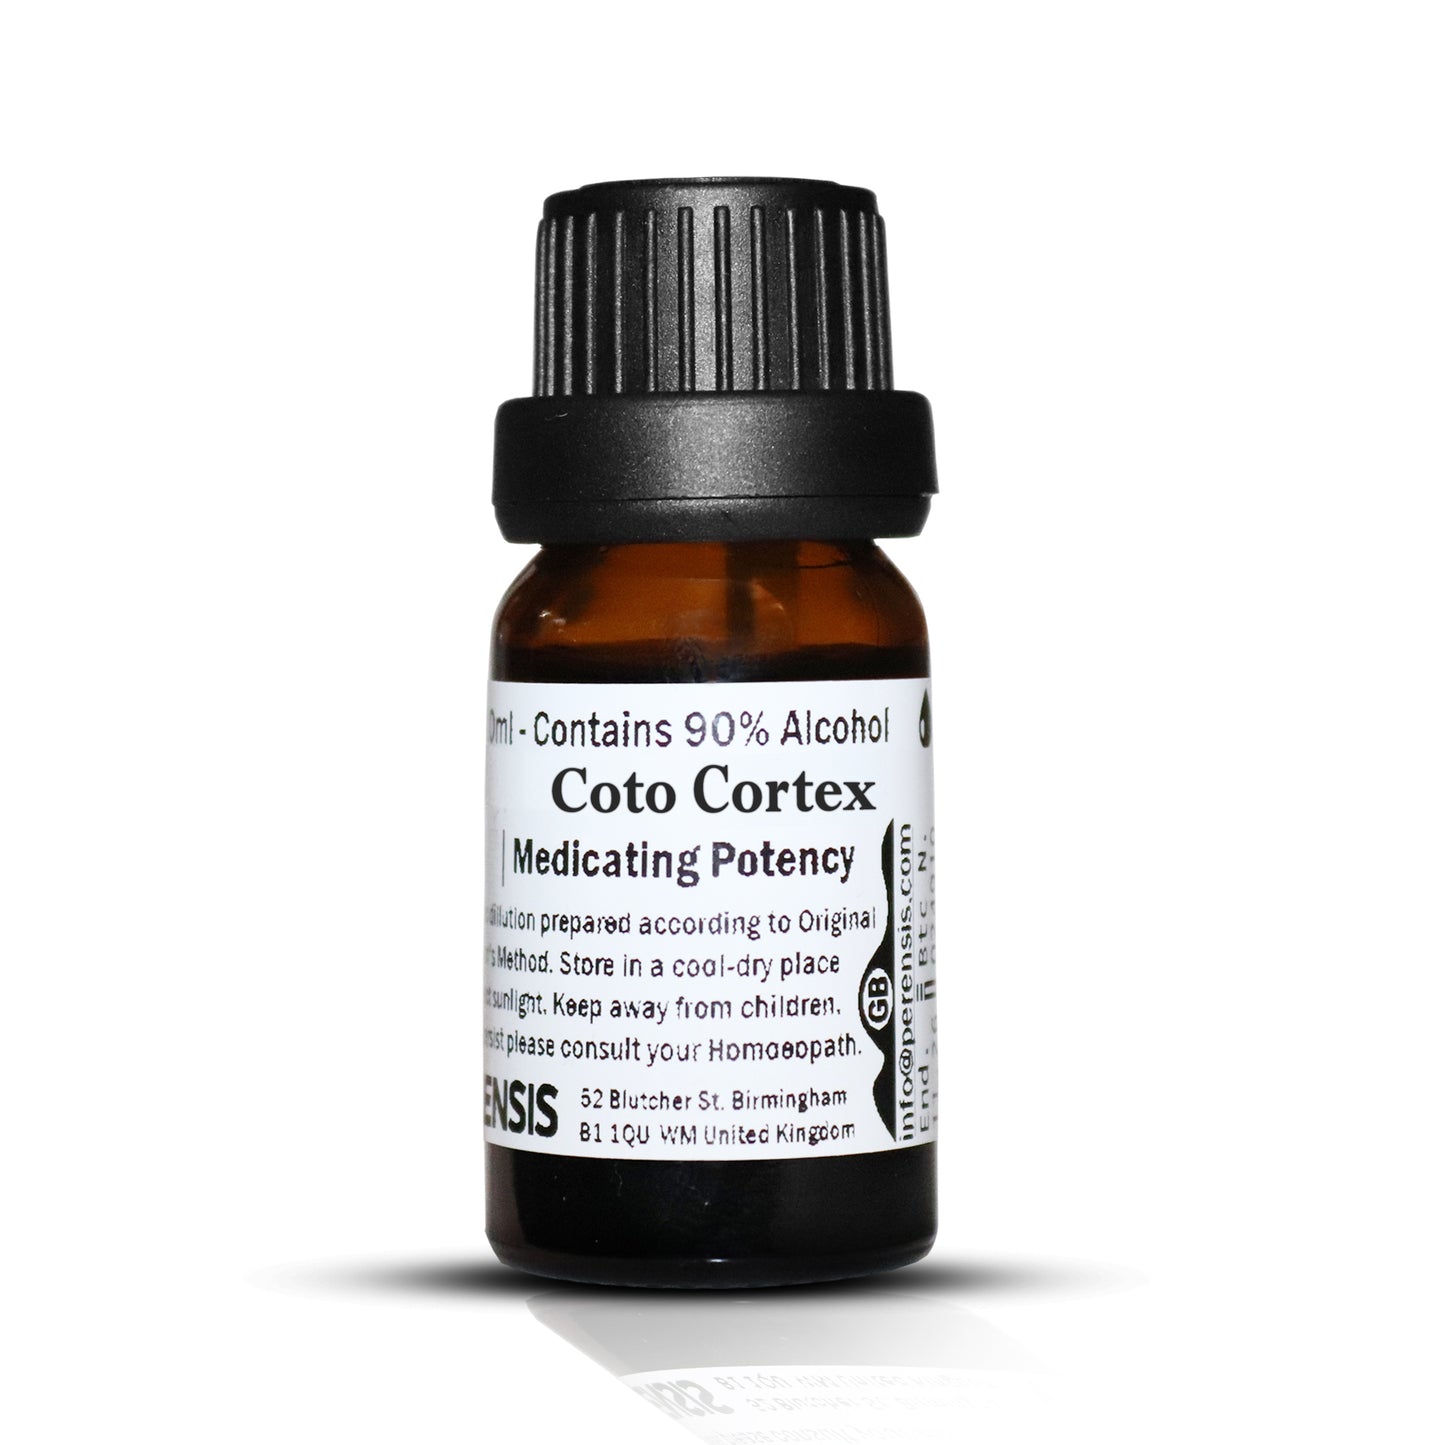 Coto Cortex